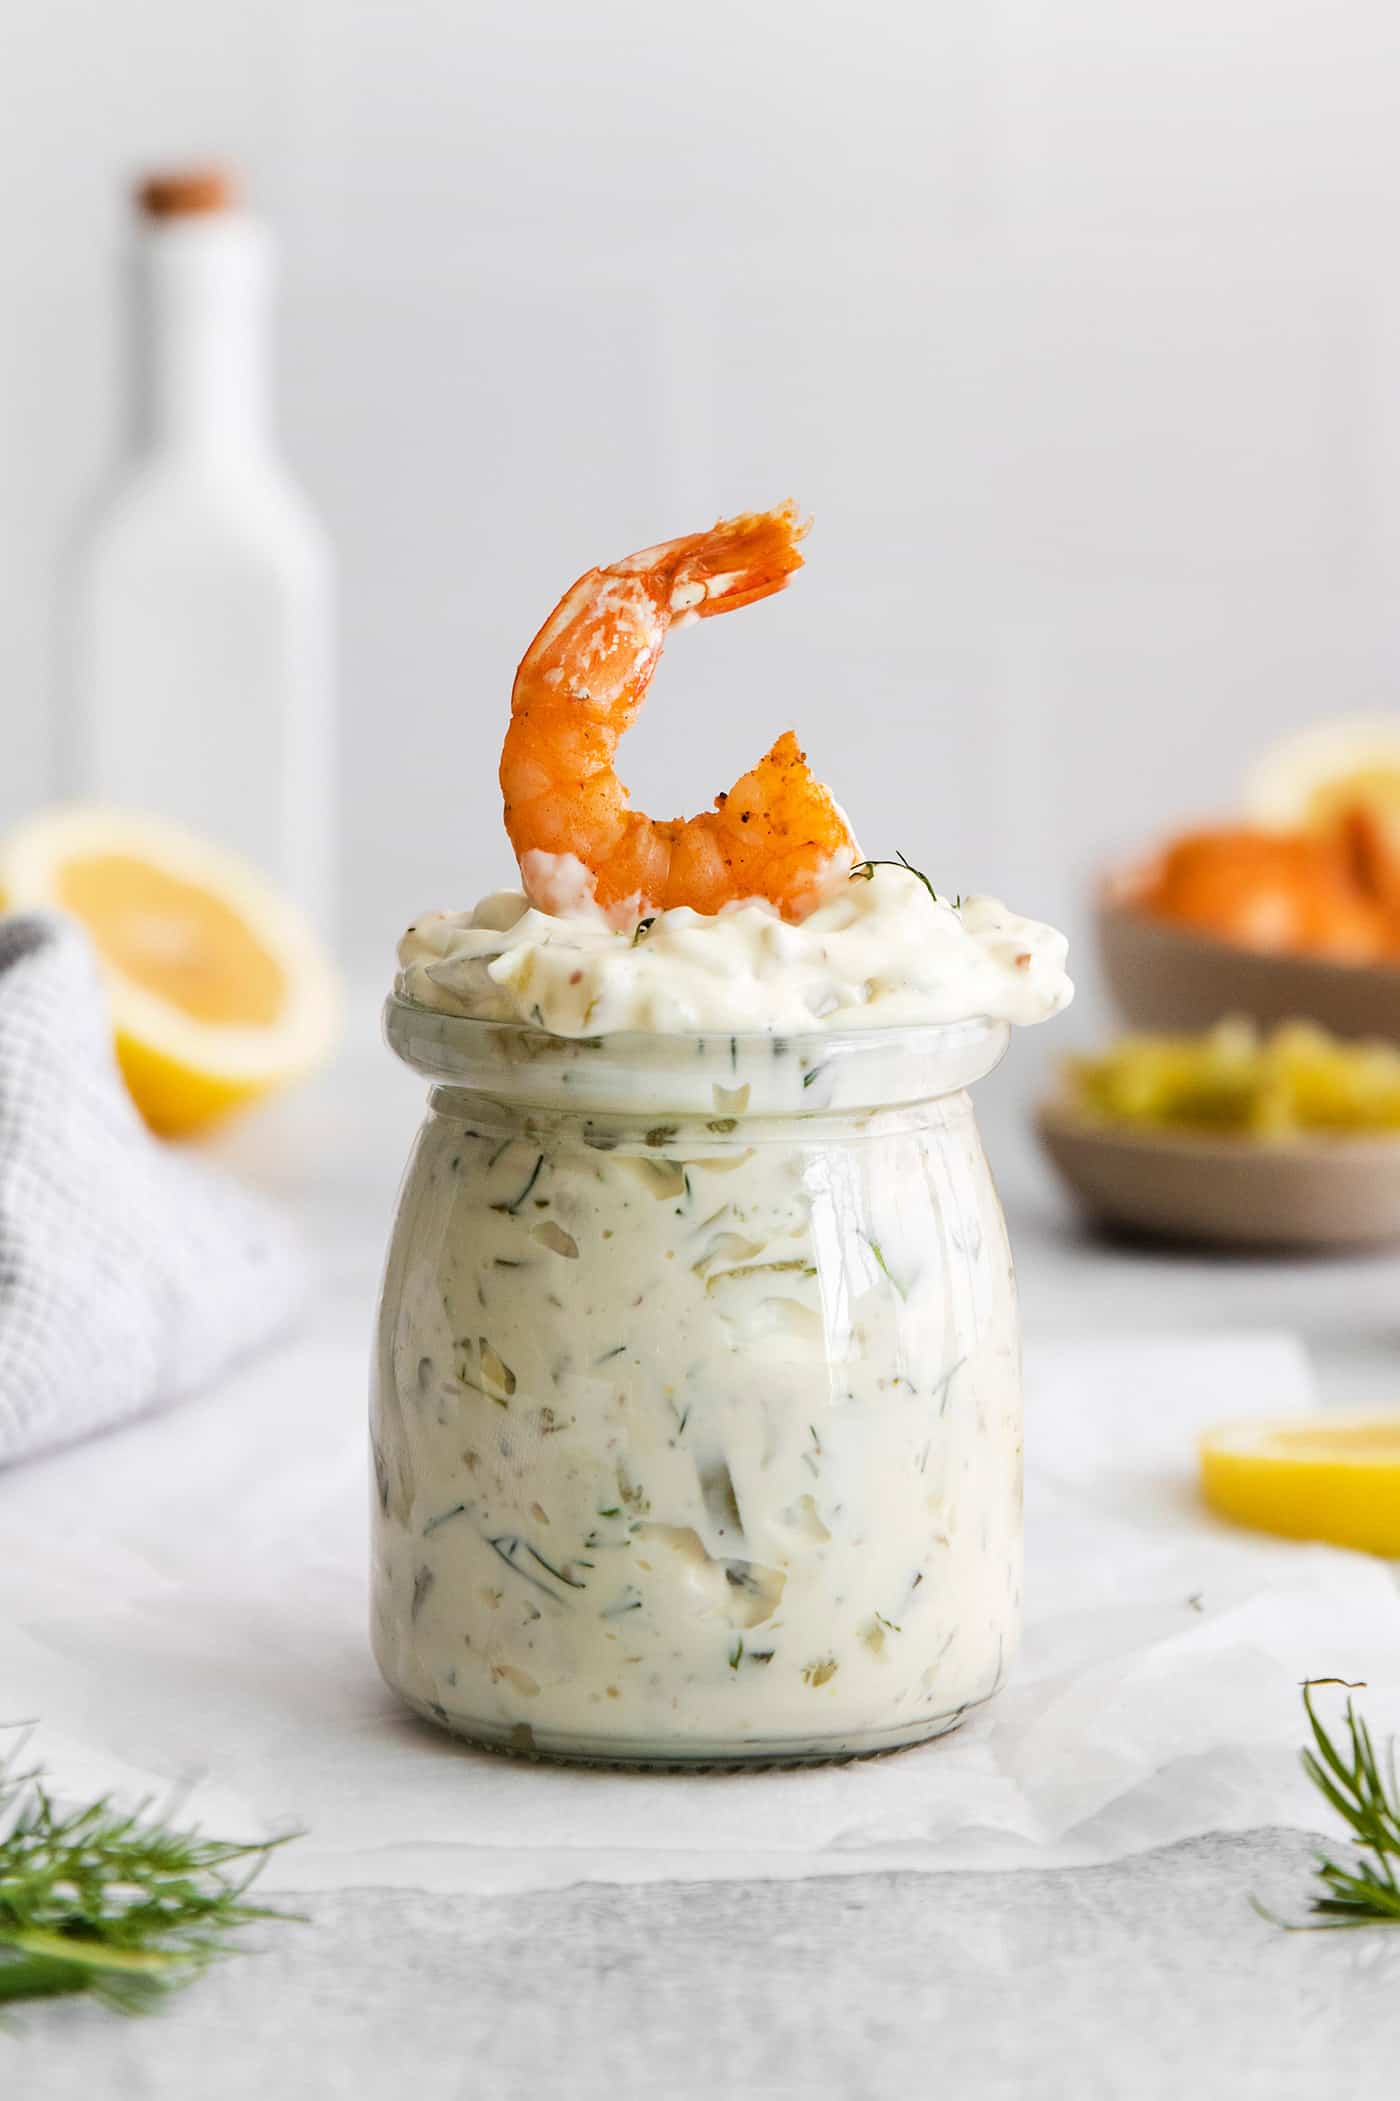 A jar of tartar sauce with a shrimp on top